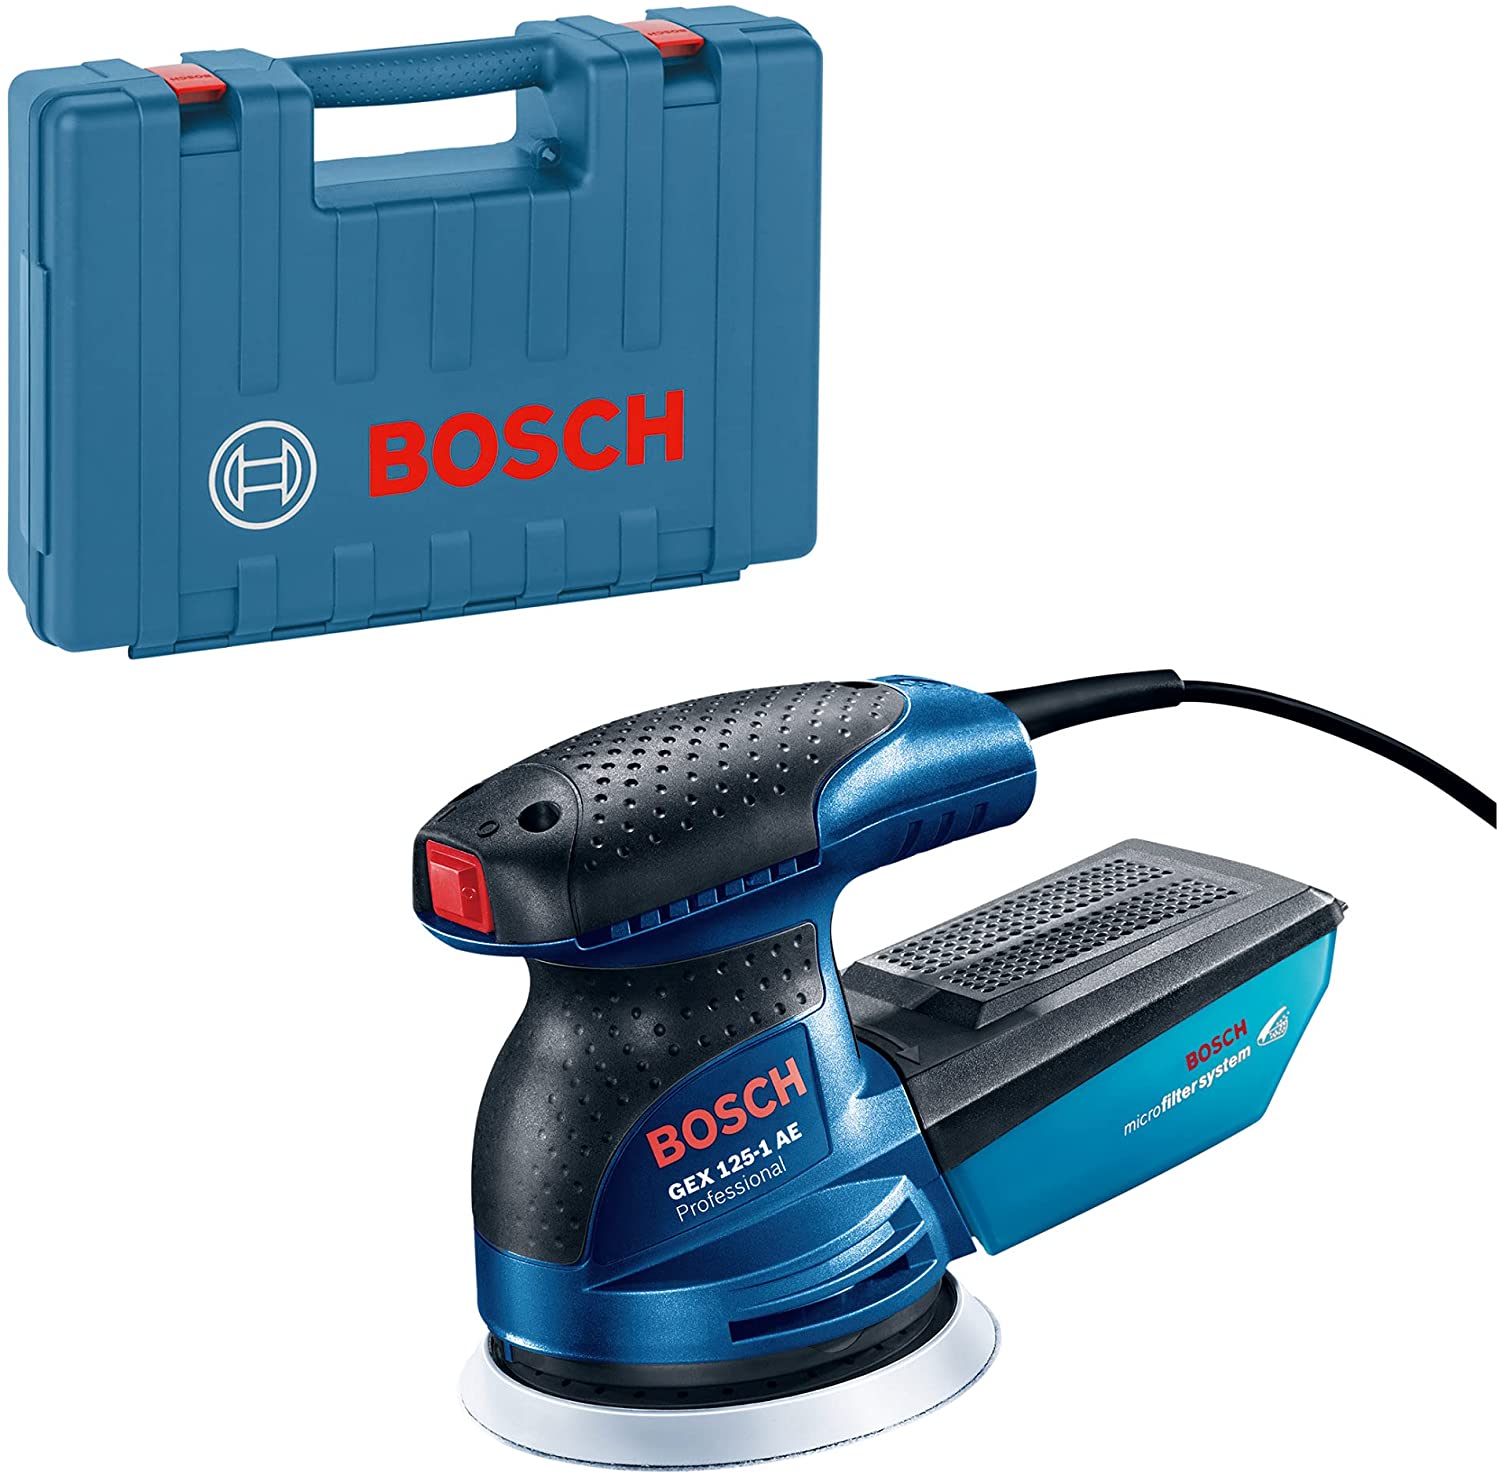 Bosch eccentric sander GEX 125-1 AE Professional (blue/black, case, 250 watts) 0601387504 (3165140875158)